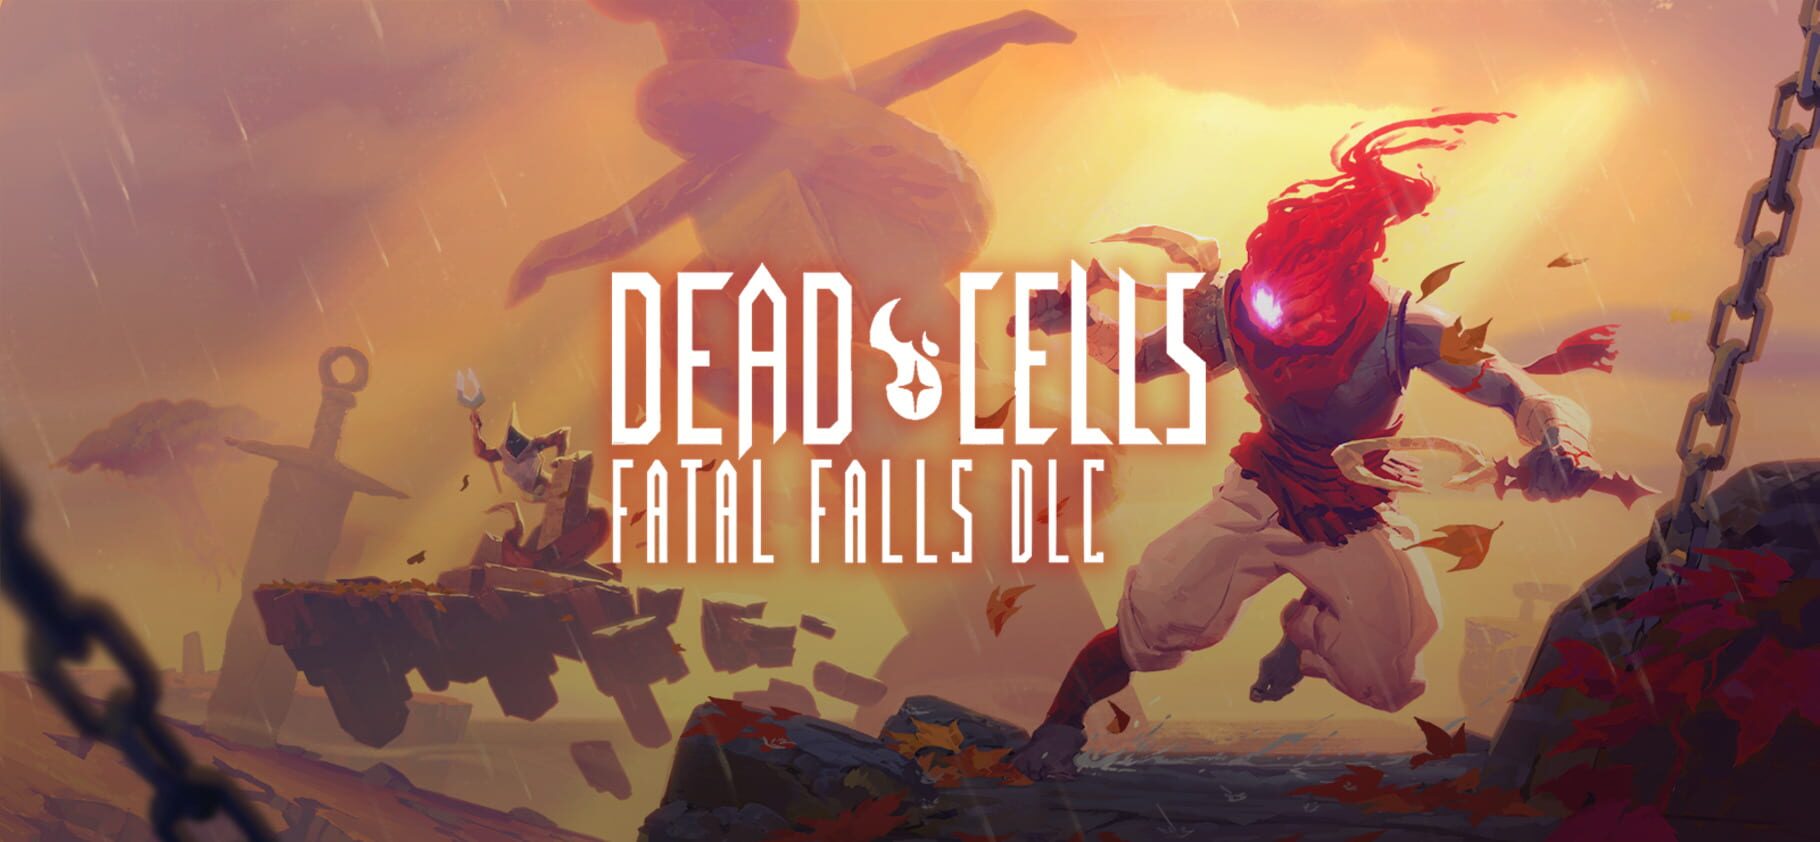 Dead Cells: Fatal Falls Image